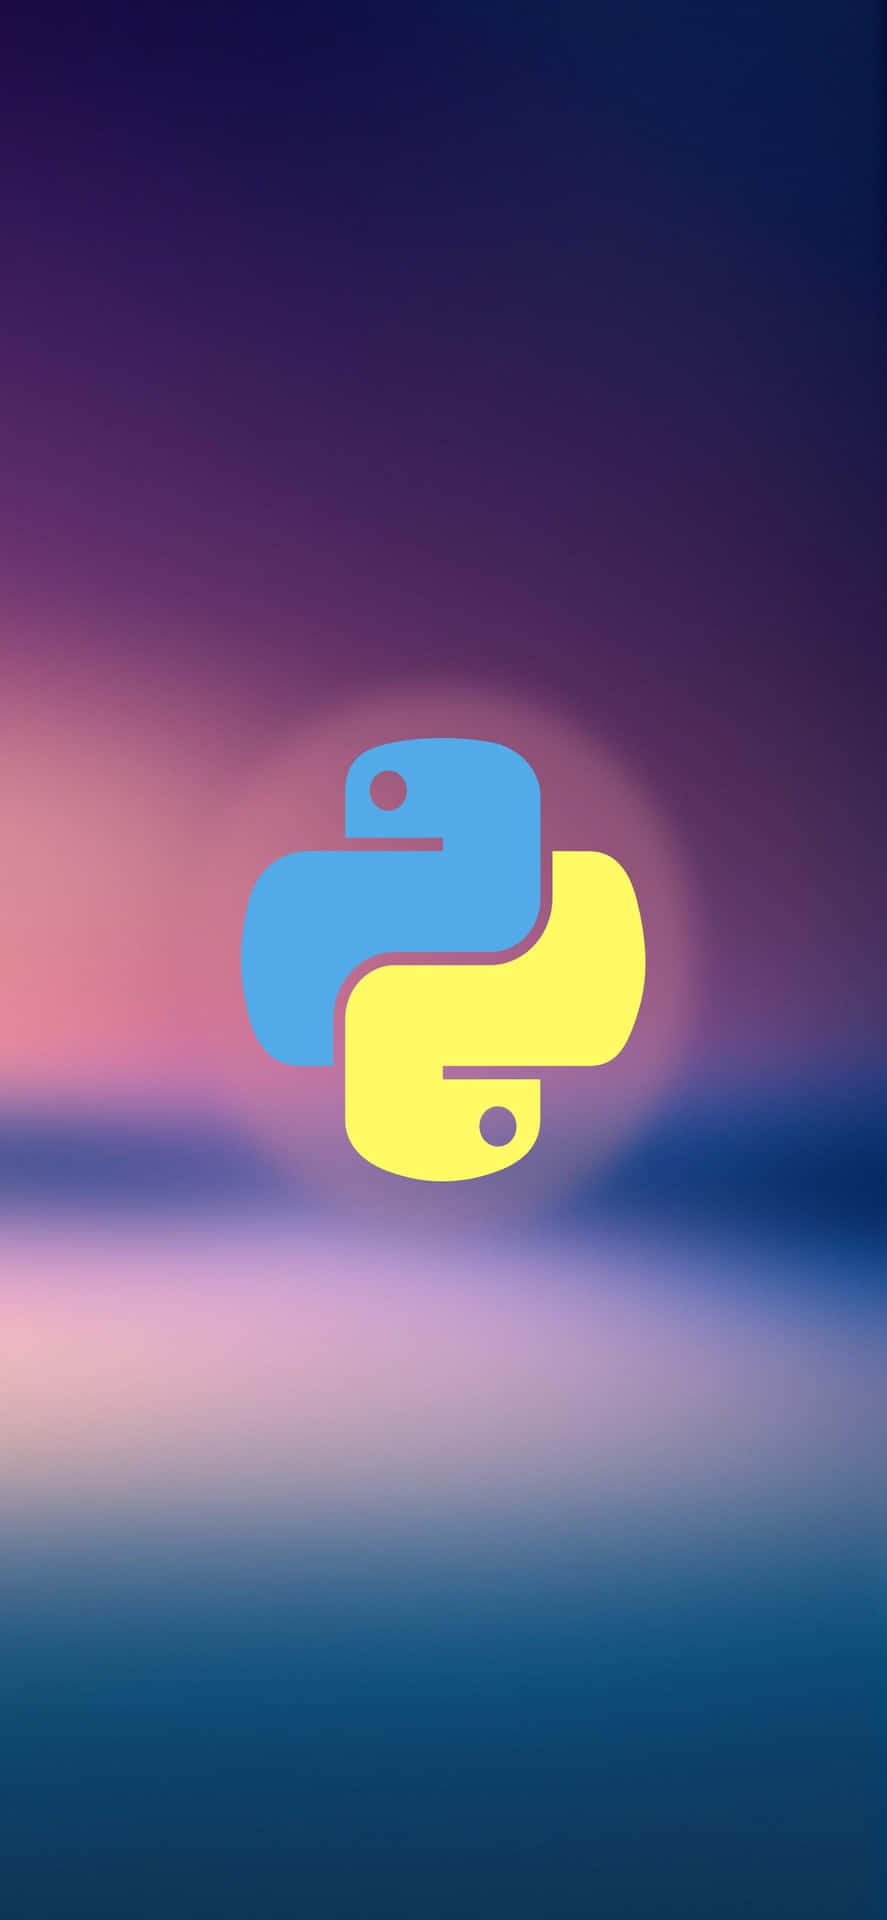 Sfondoper Iphone Xs Con Logo Di Python Per Programmatori